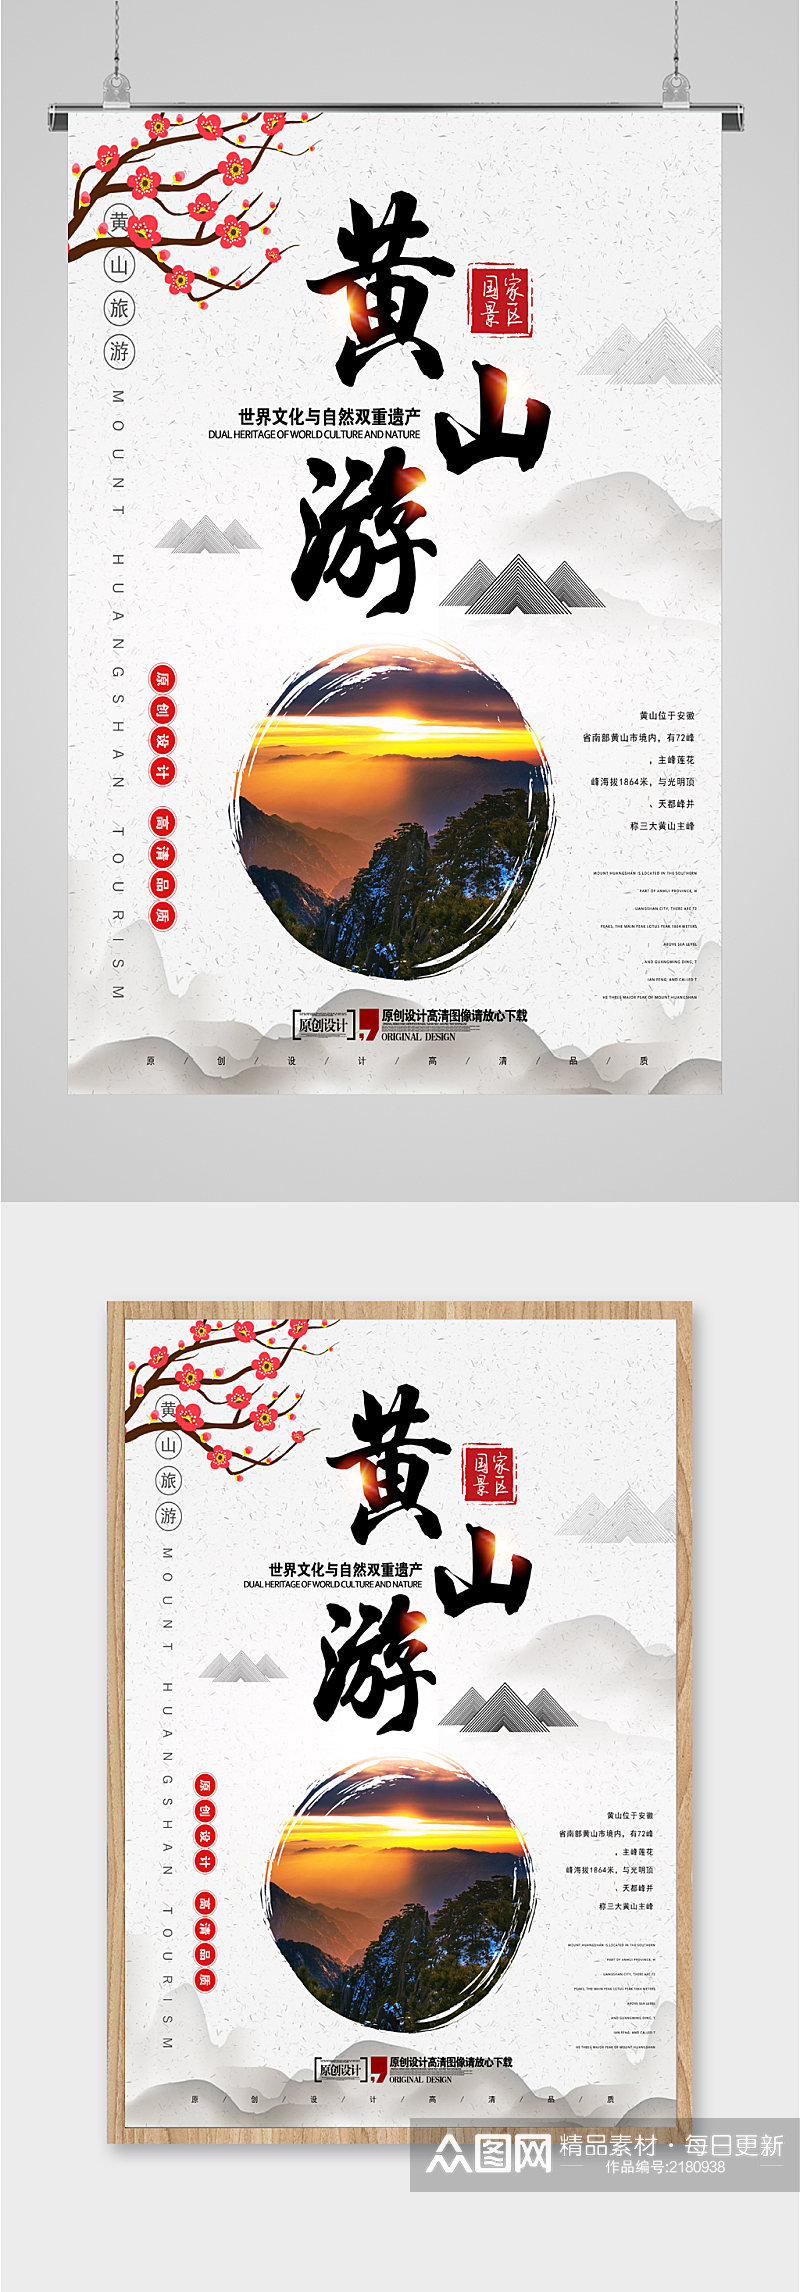 黄山游文化自然遗产旅游海报素材